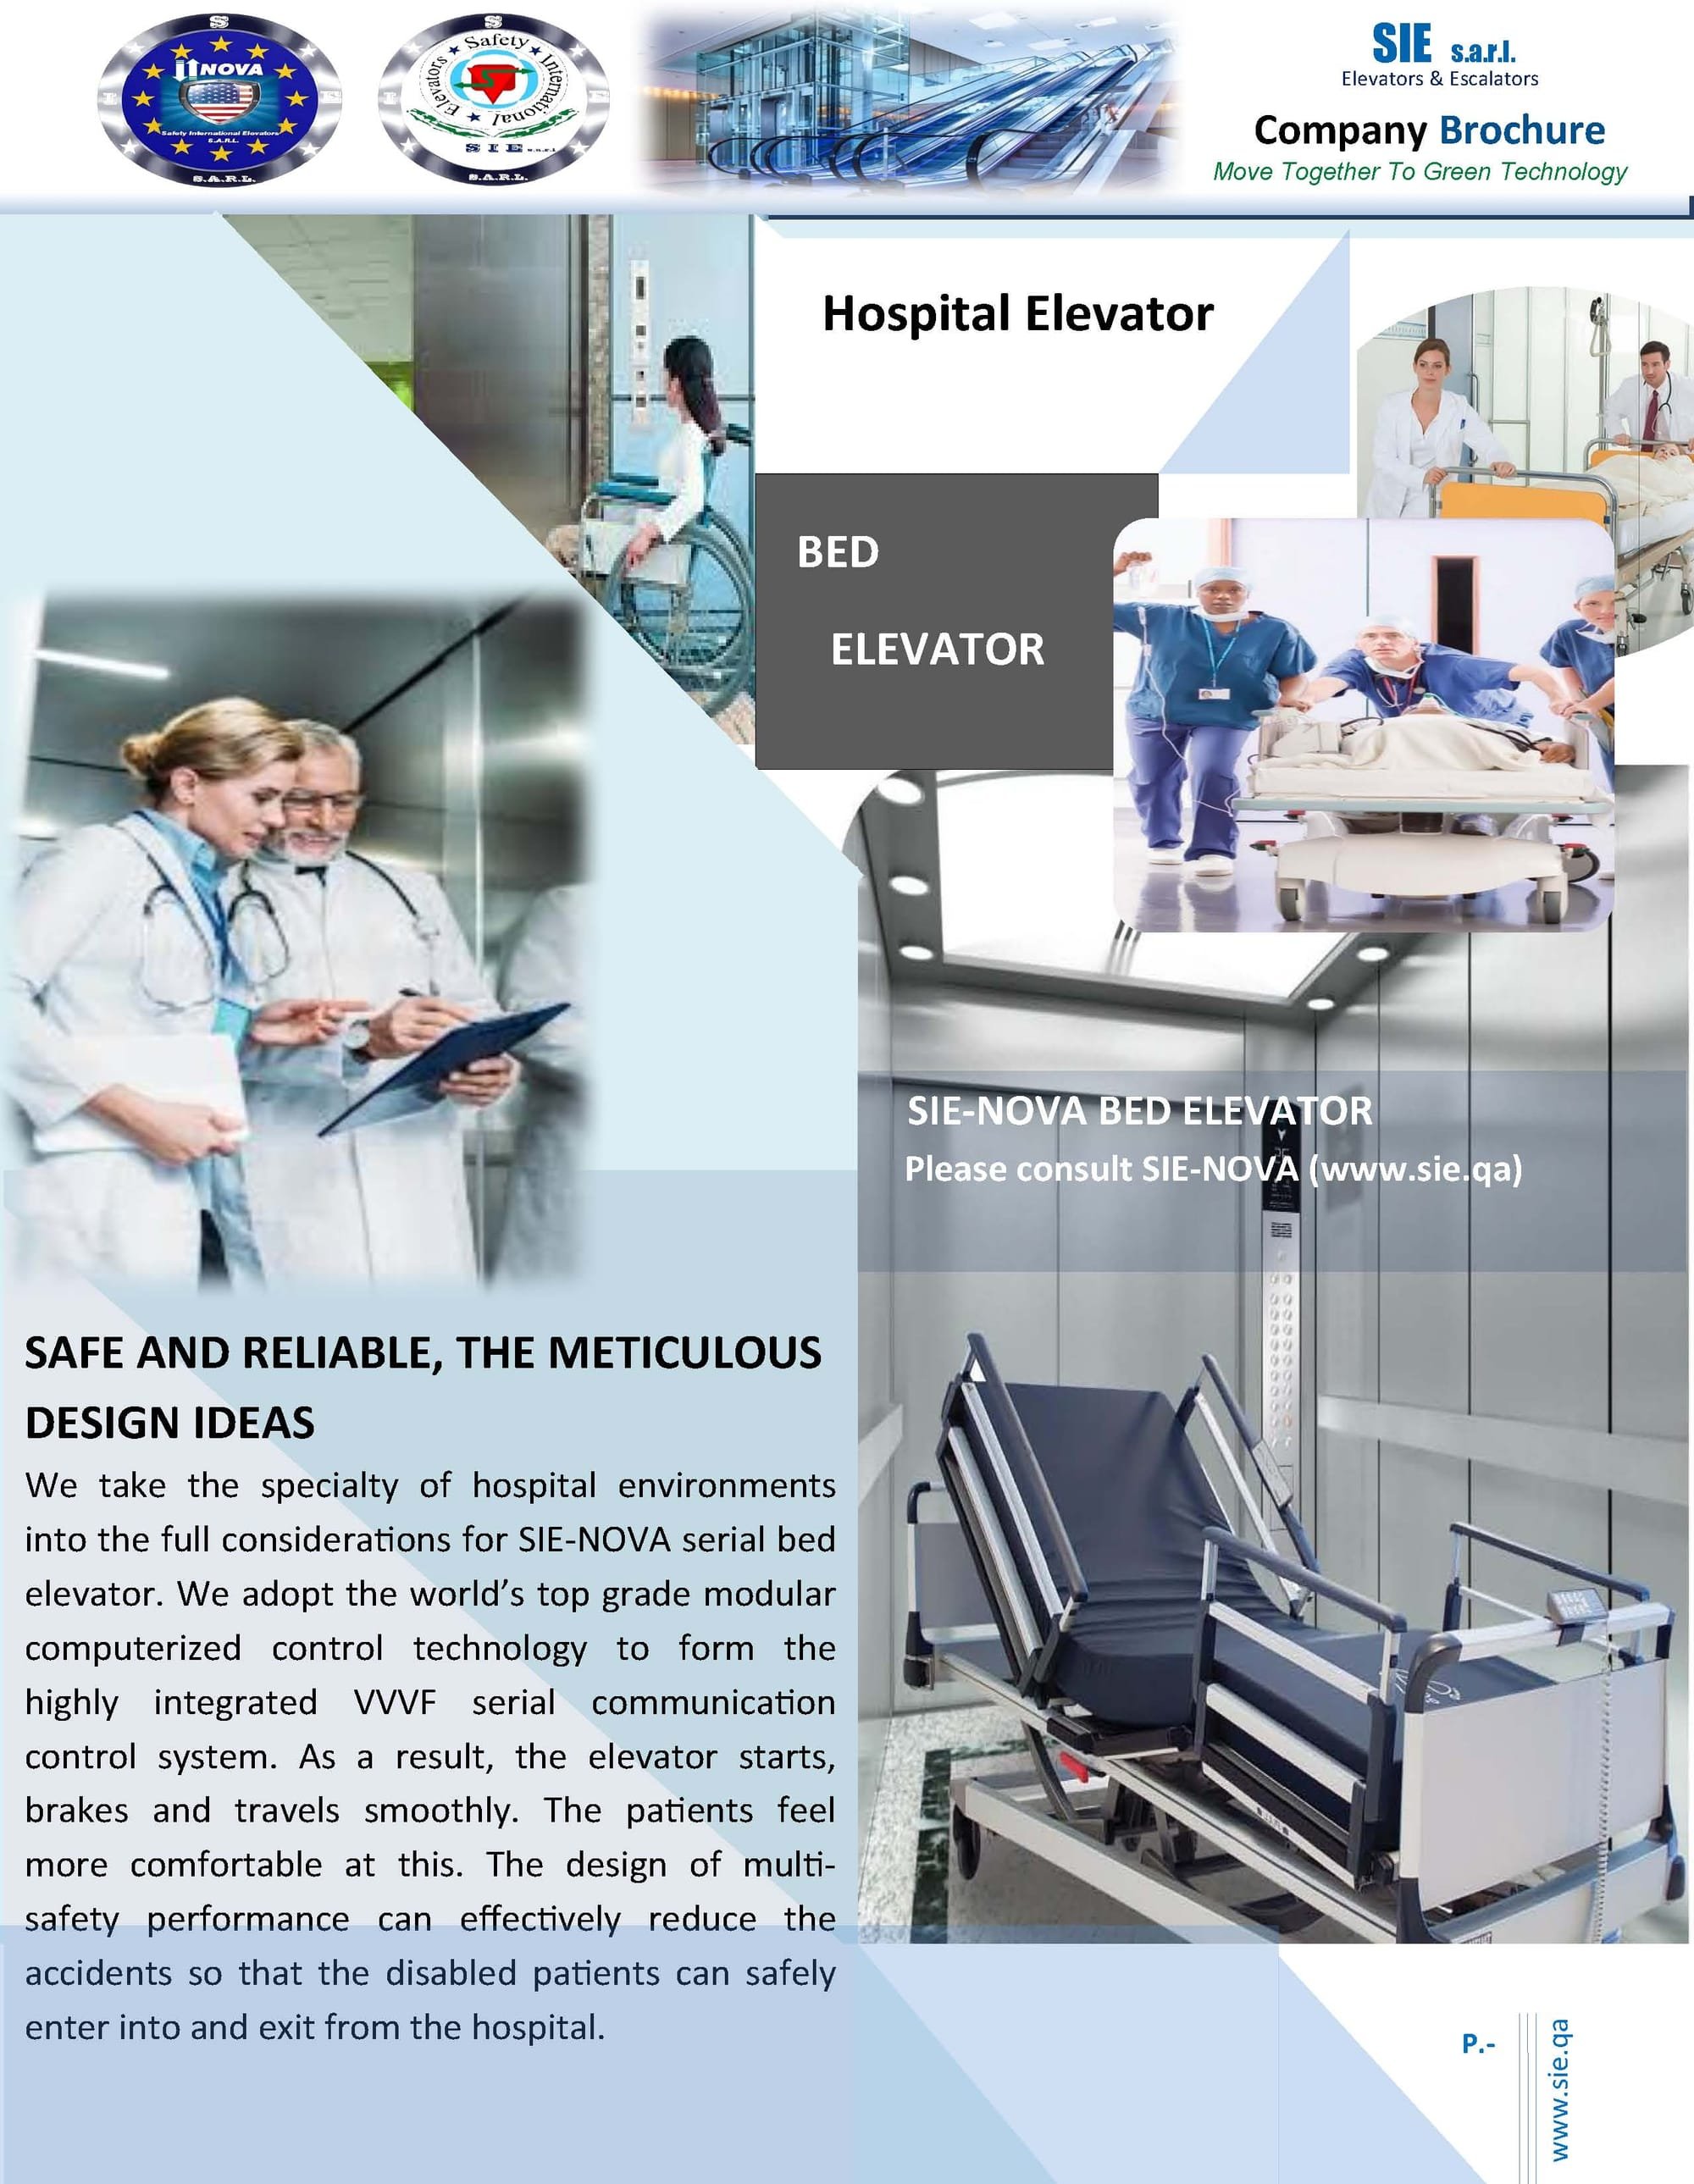 HOSPITAL ELEVATOR/BED ELEVATOR